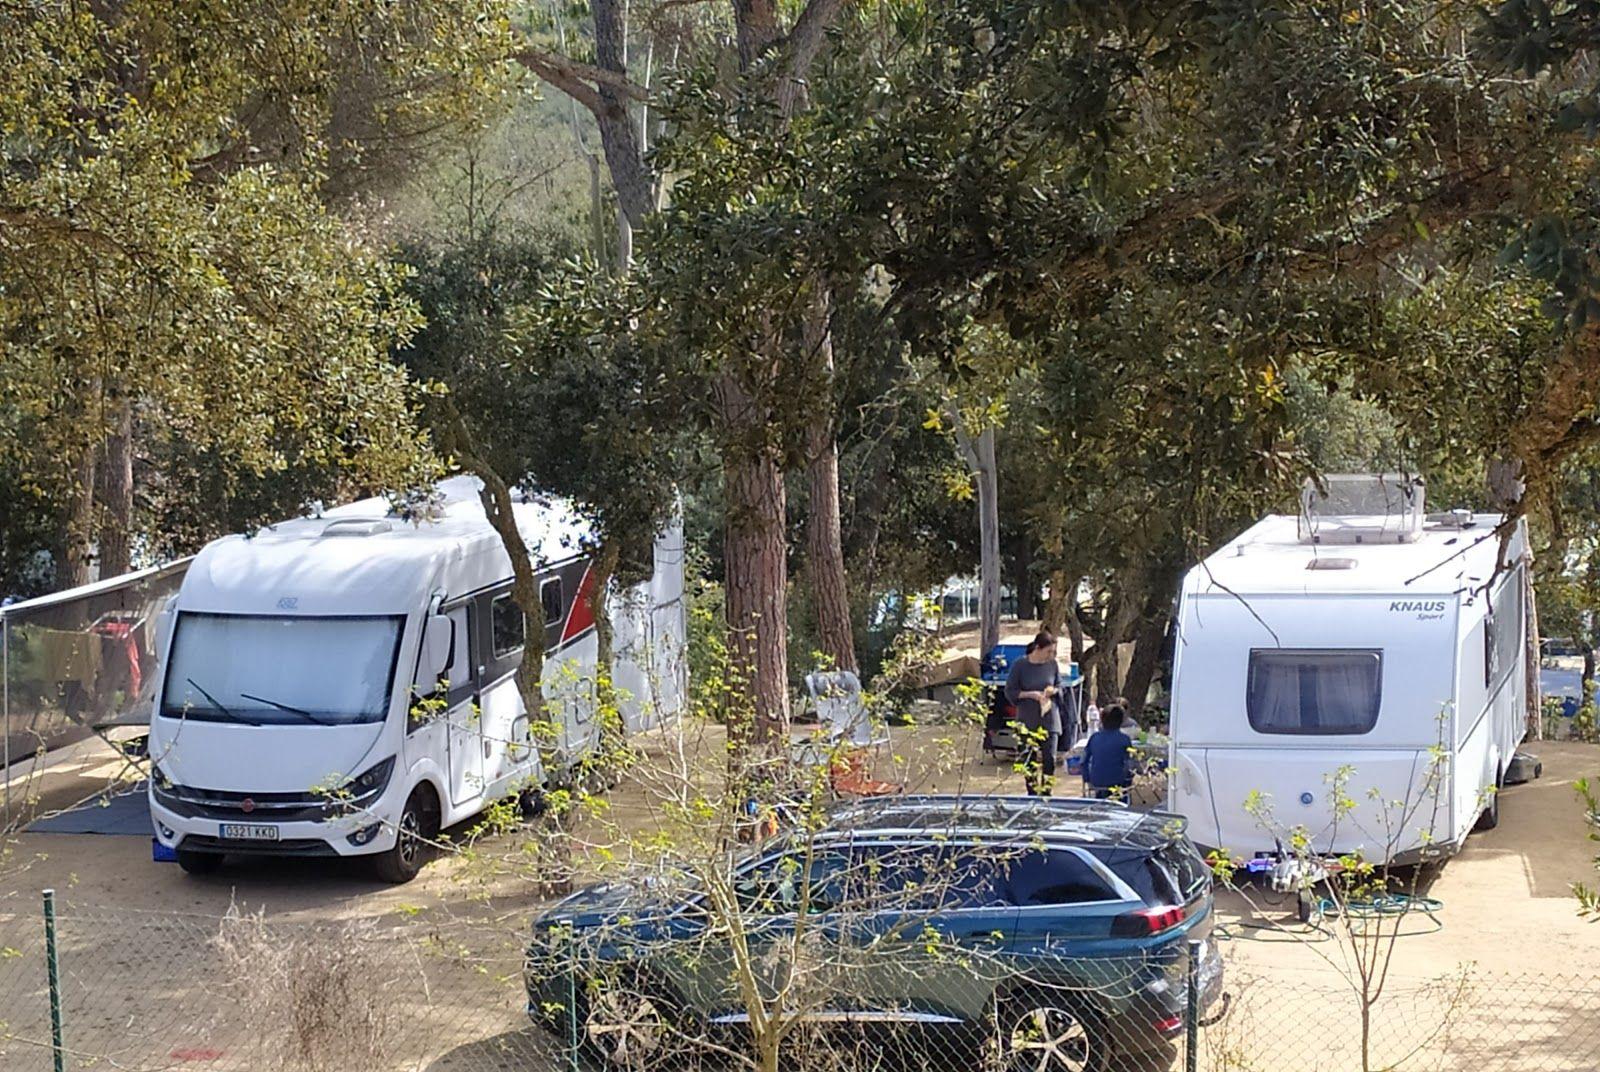 Camping Ridaura - Llagostera, Llagostera, Spain